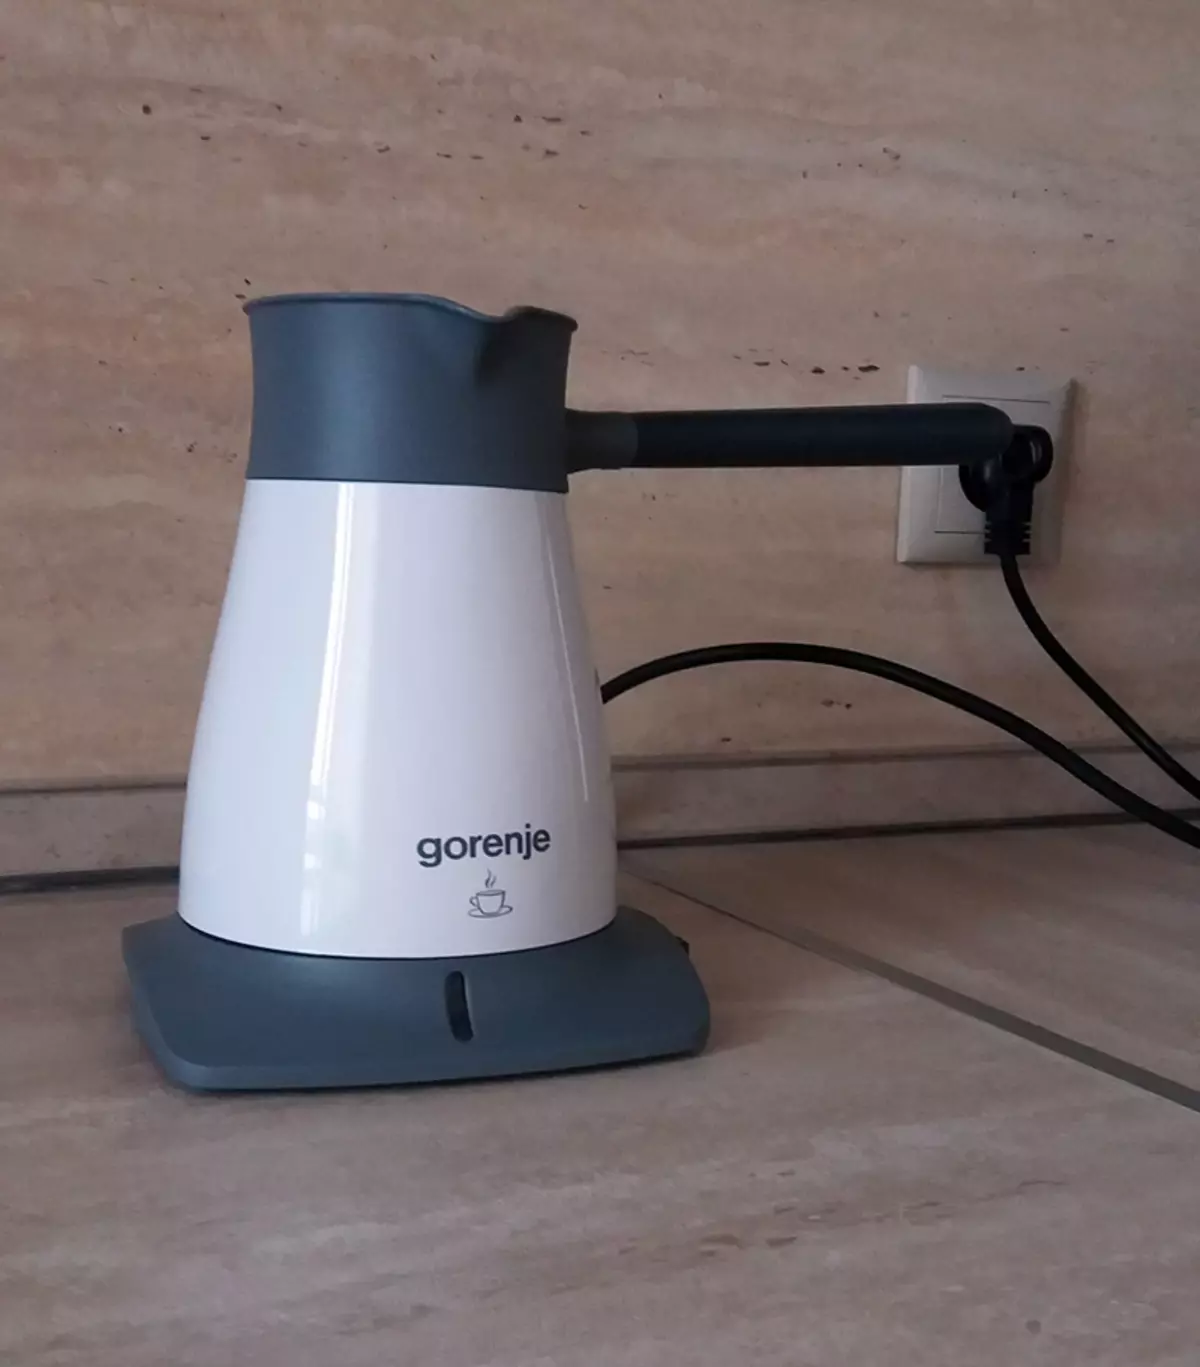 Electric Turks: Kohvi hiire kohvimasin Auto kontoriga keetmisel mudelid Gorenje ja Sinbo, ülevaateid 21652_16